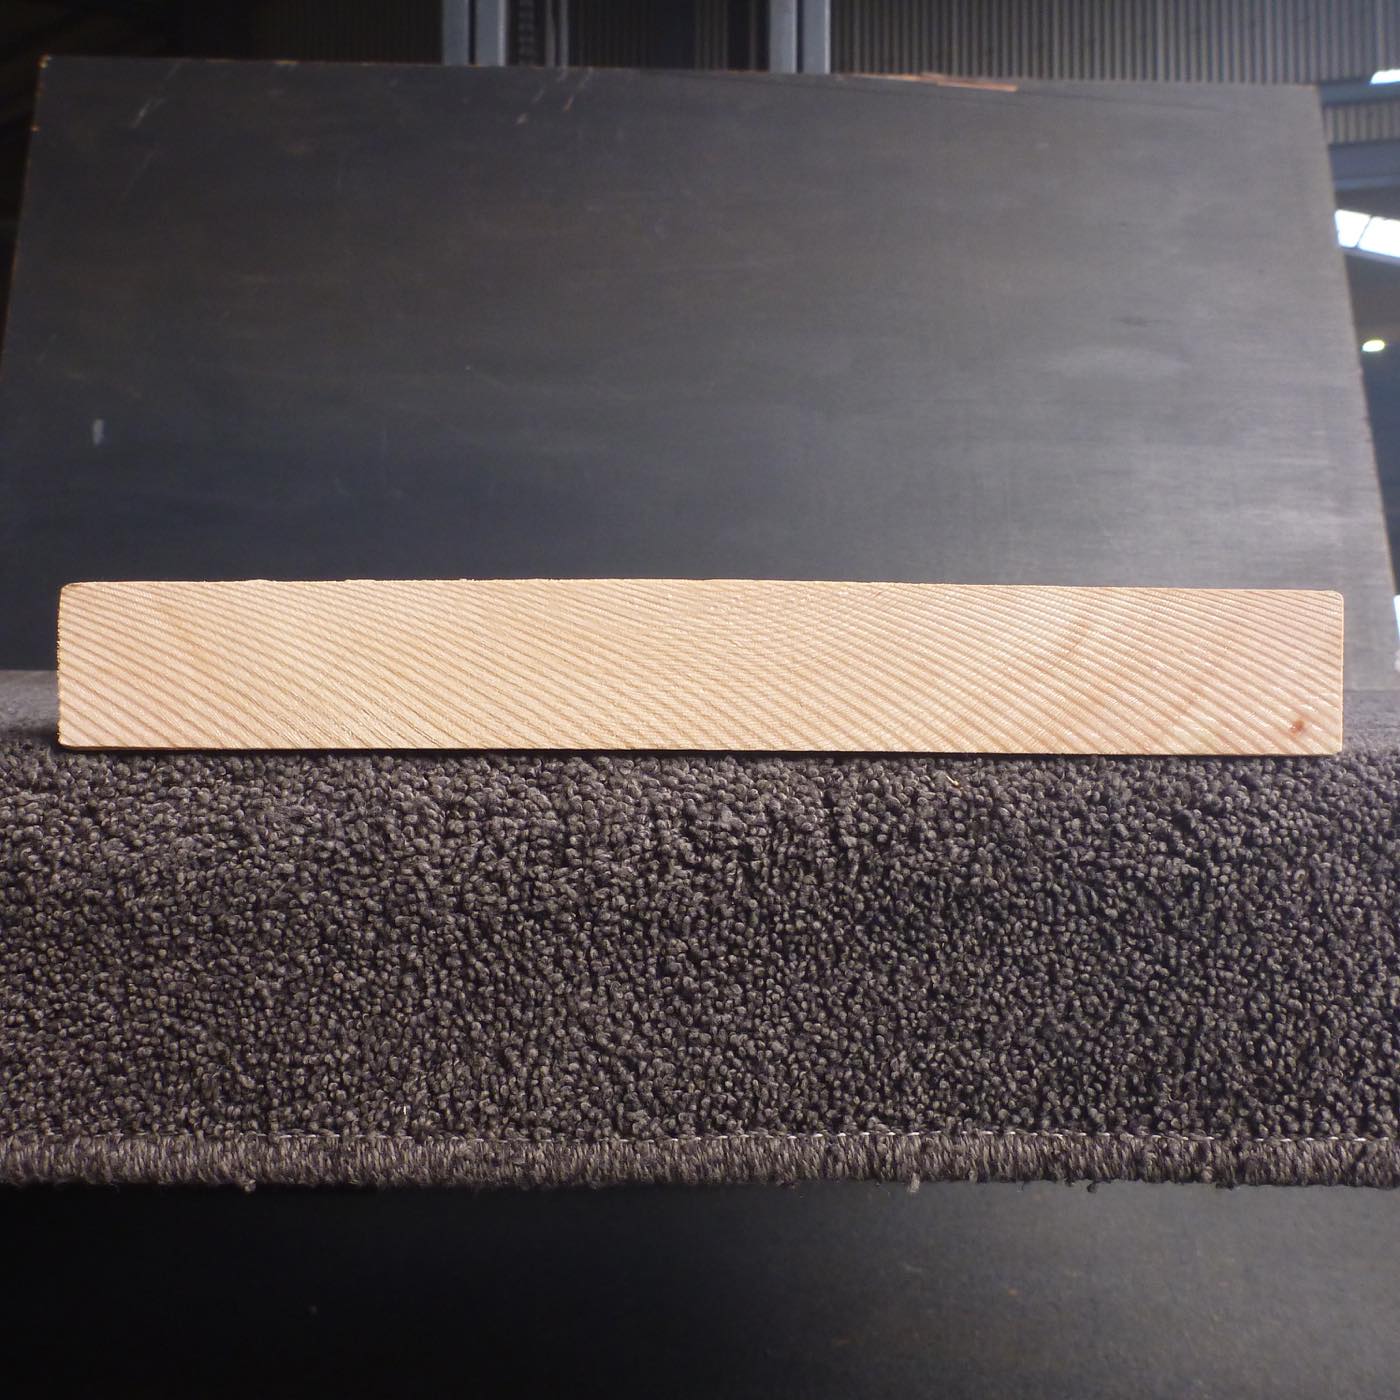 彫刻材 天然木曽檜 板目板 ラフ材 L450×T36×W285mm 45036285 Aグレード